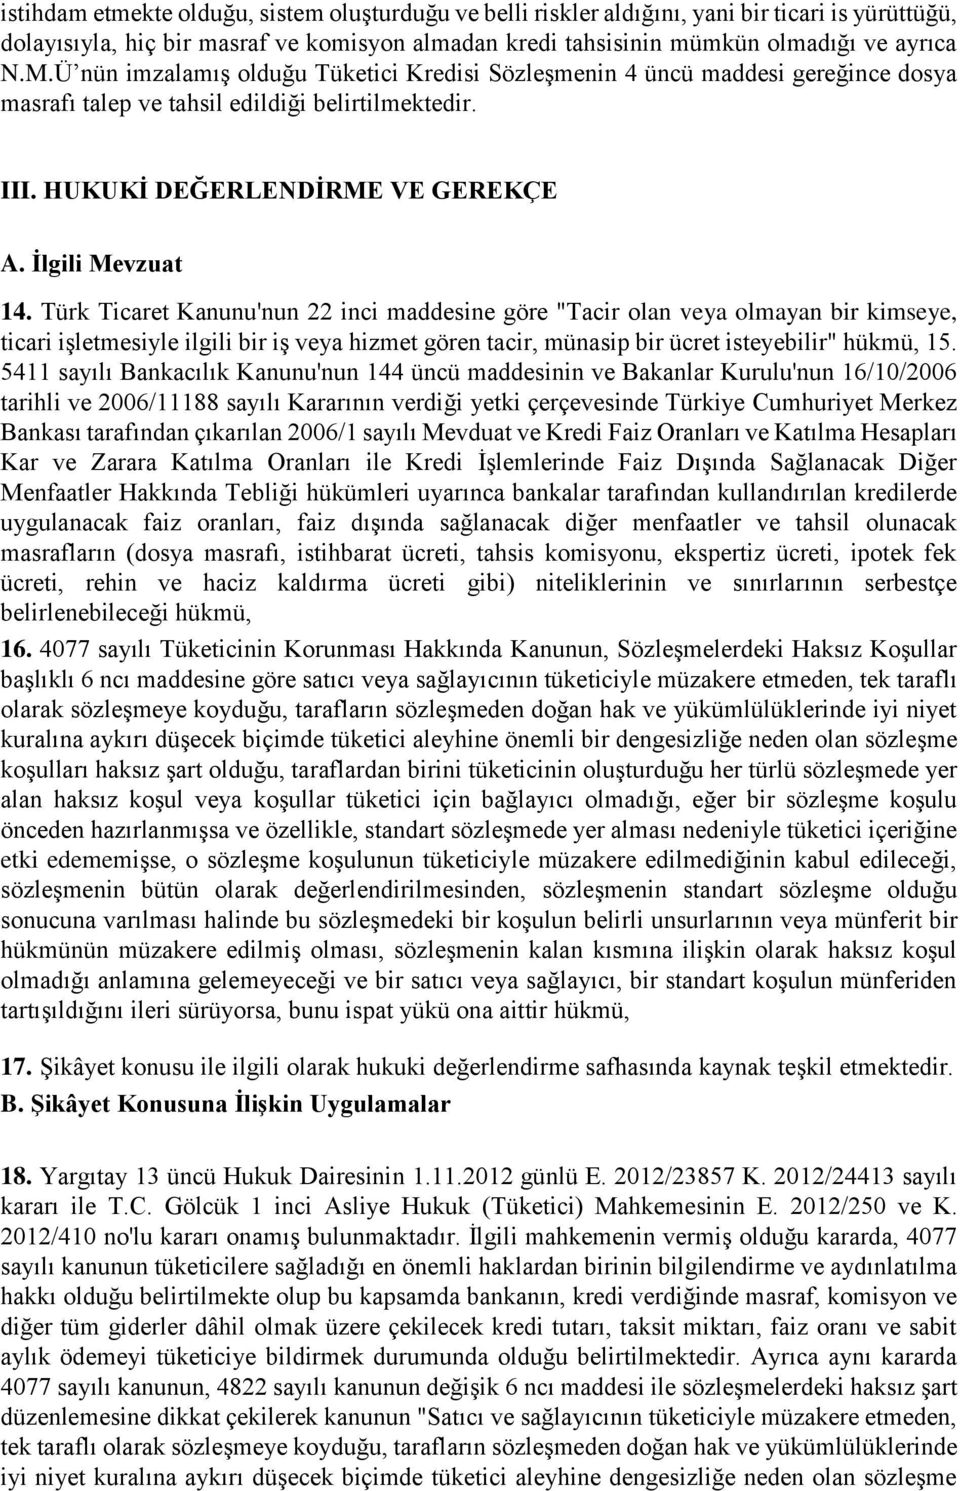 Türk Ticaret Kanunu'nun 22 inci maddesine göre "Tacir olan veya olmayan bir kimseye, ticari işletmesiyle ilgili bir iş veya hizmet gören tacir, münasip bir ücret isteyebilir" hükmü, 15.